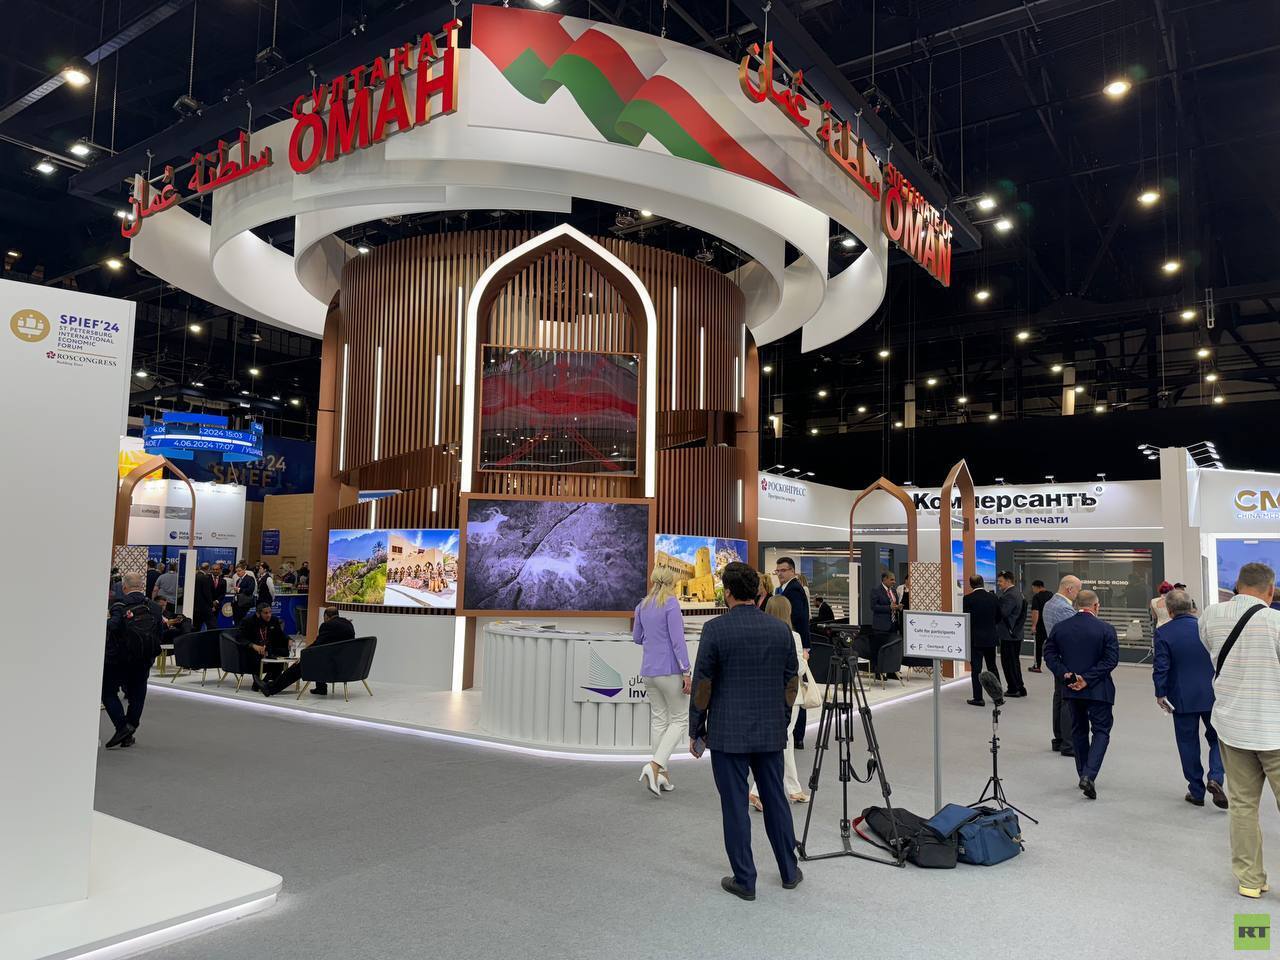 أبرز جوانب العلاقات بين روسيا وسلطنة عمان